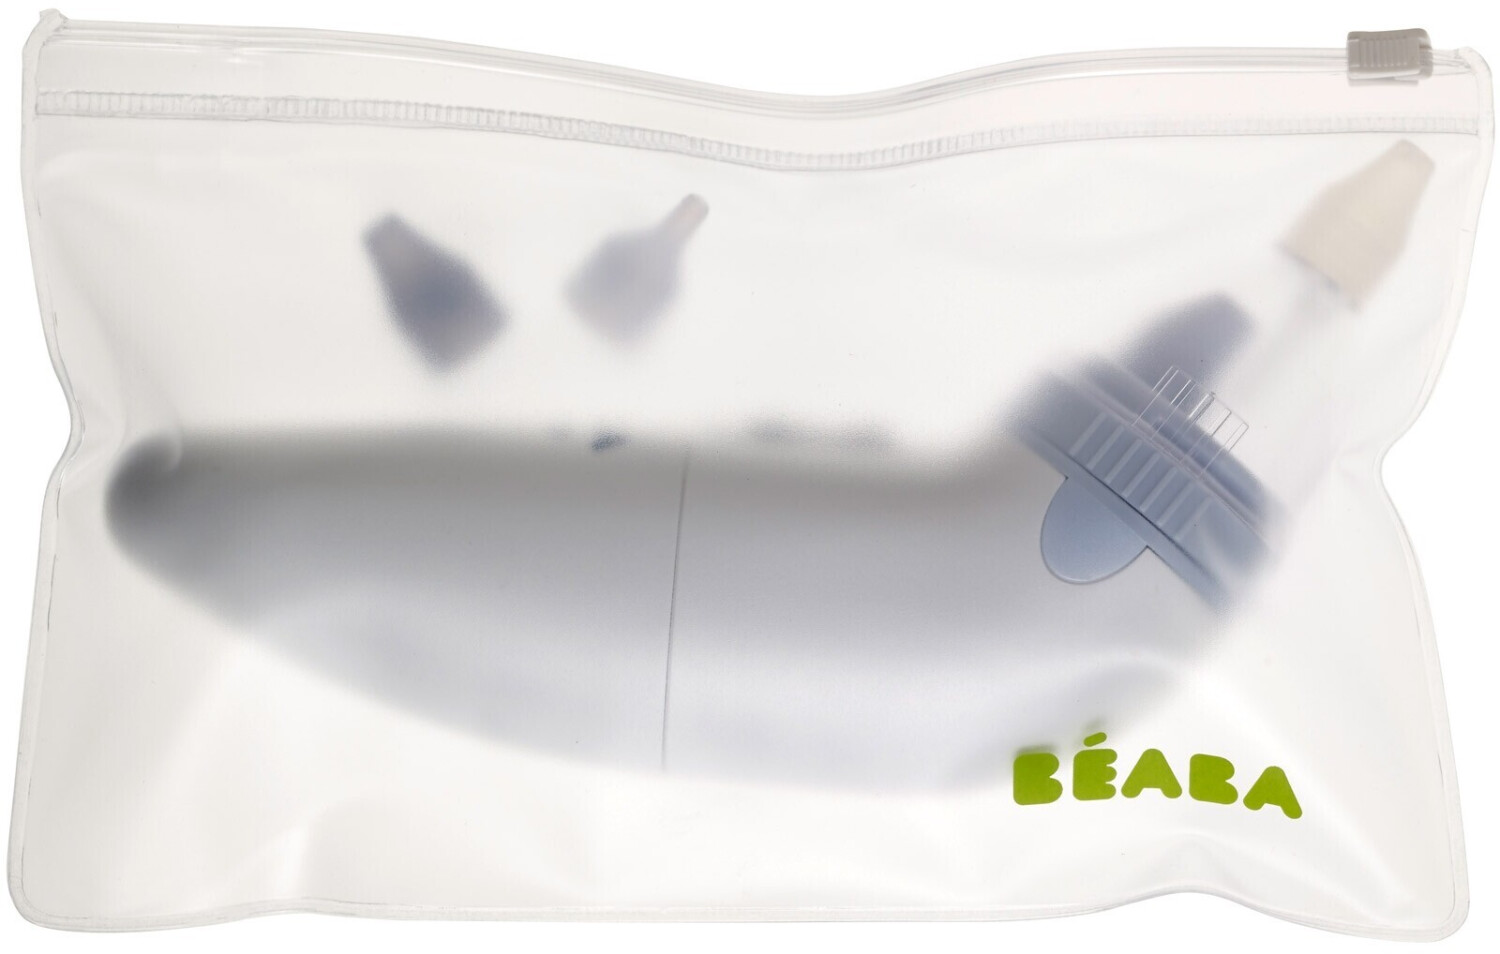 ProRhinel Disposable Supple Ends for Baby Nose Blower 20 pcs au meilleur  prix sur